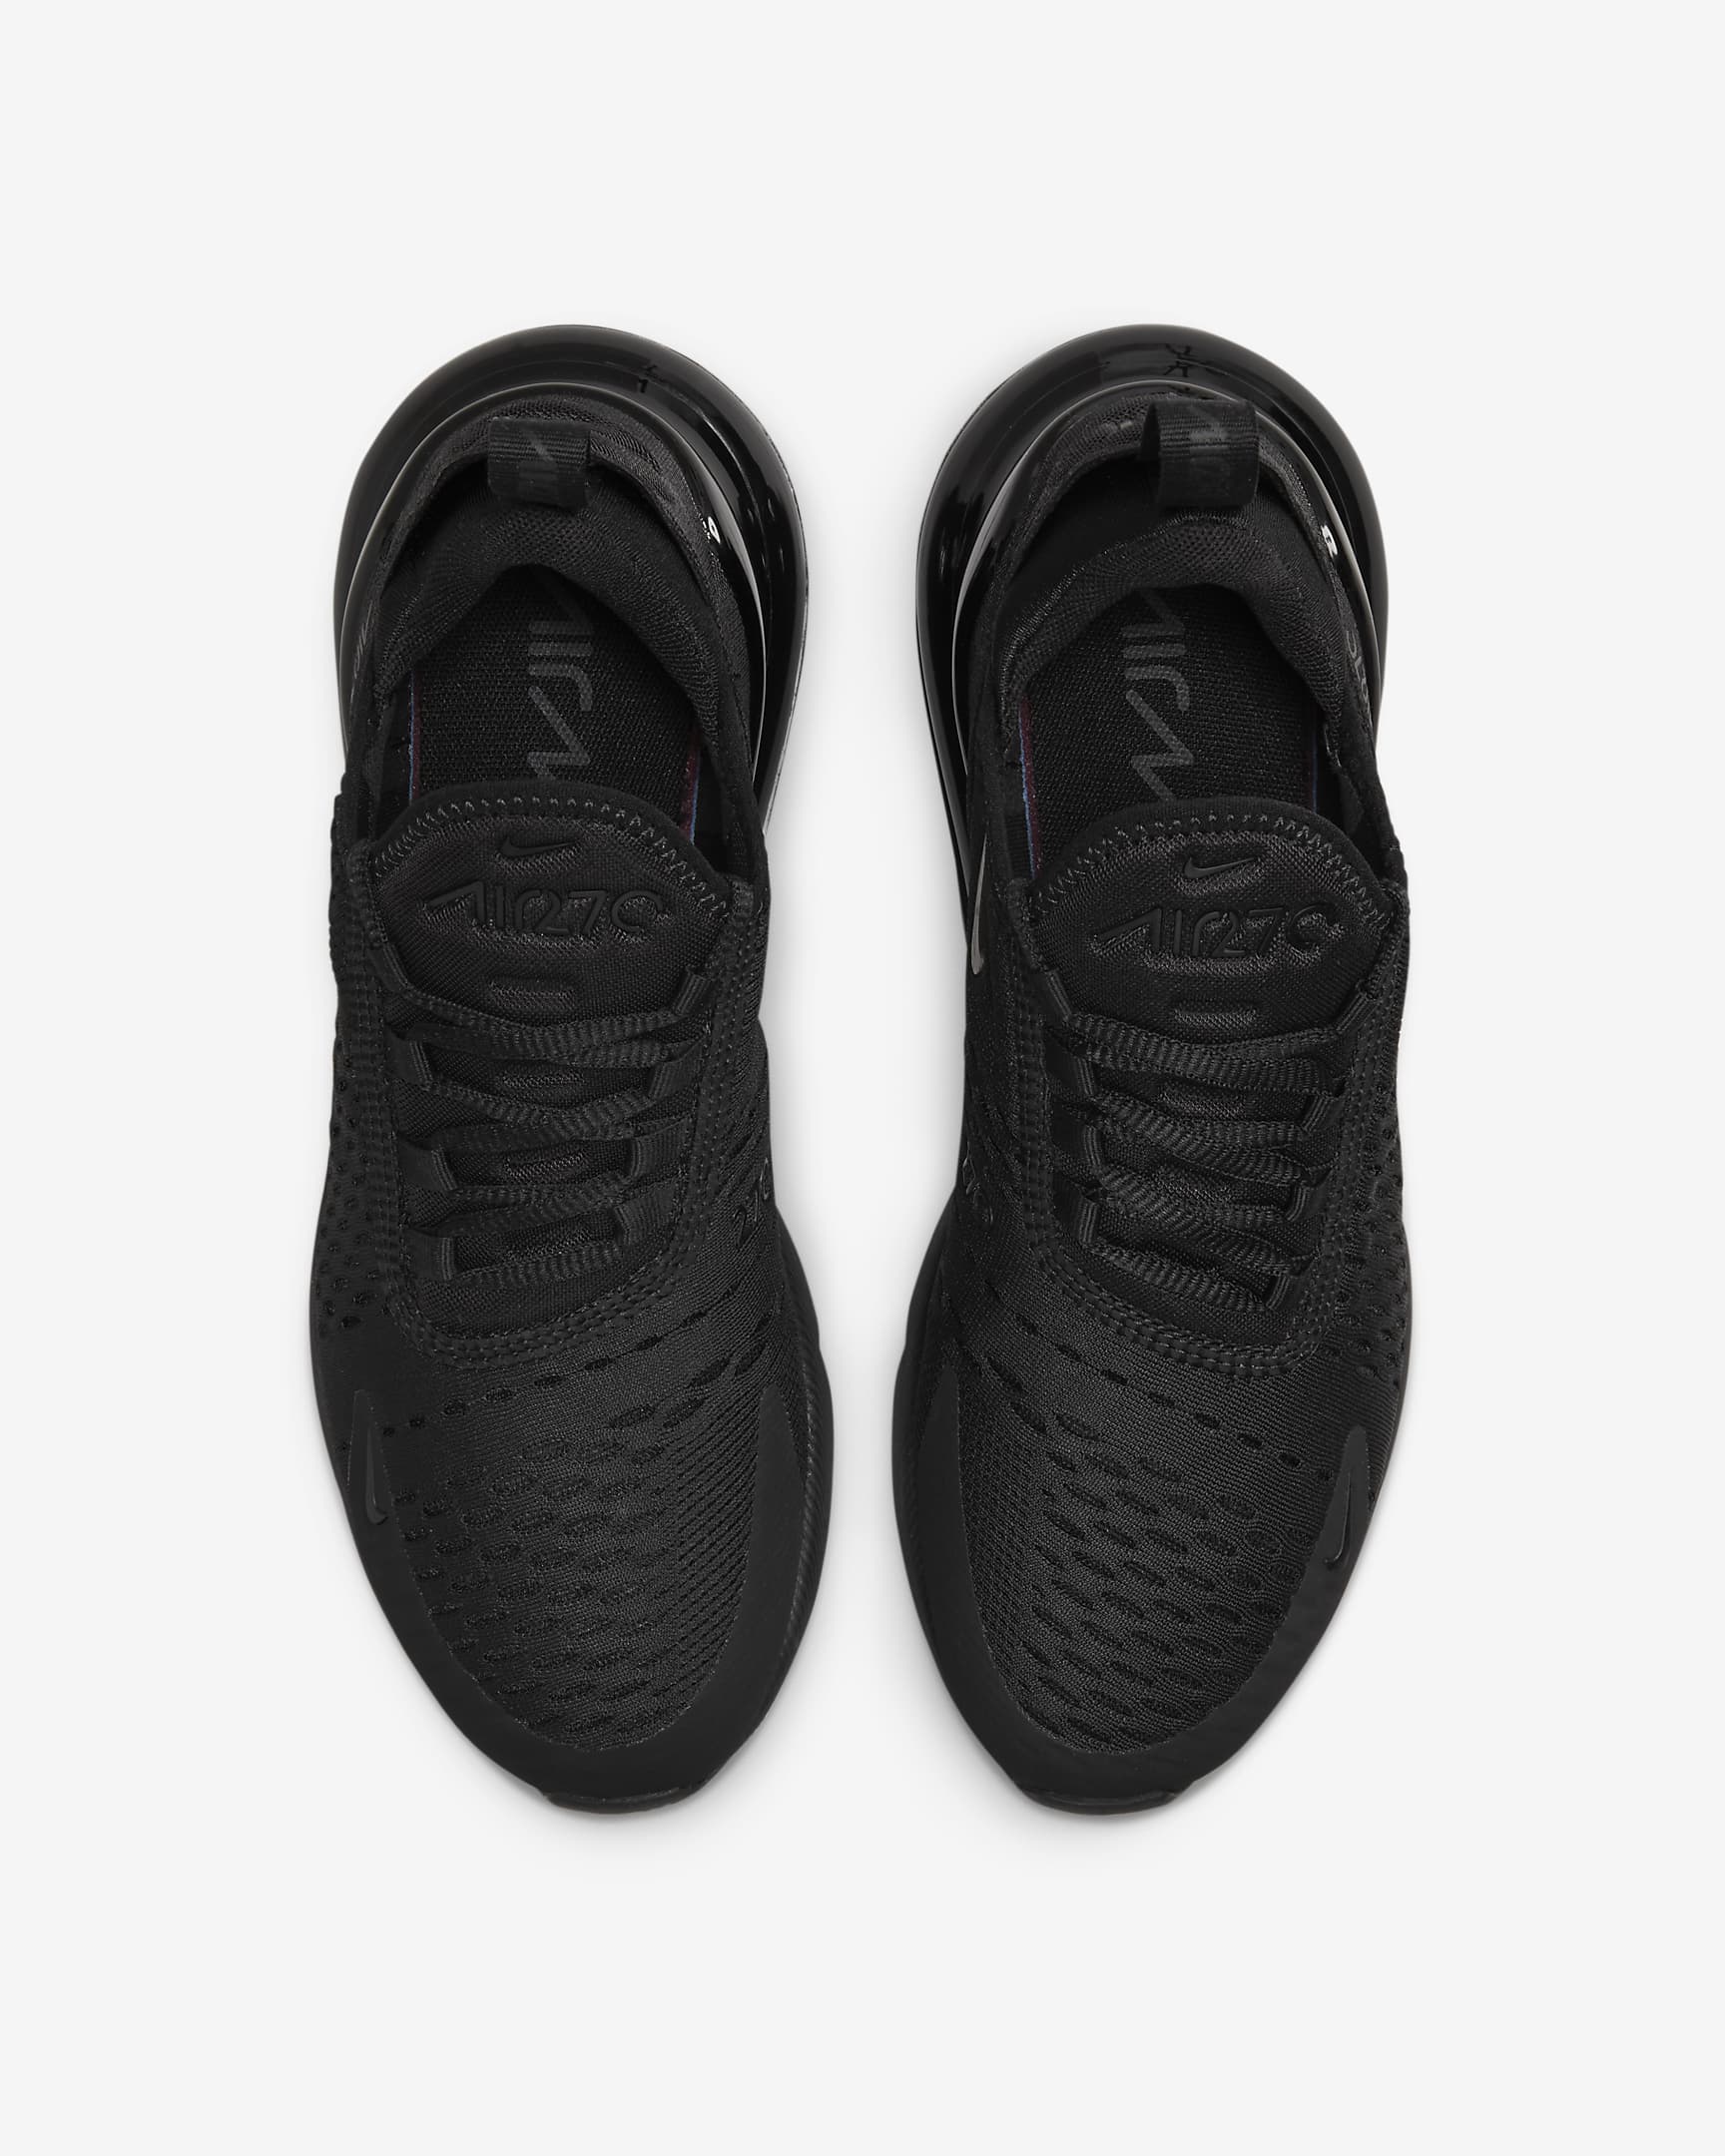 Nike Air Max 270-sko til kvinder - sort/sort/sort